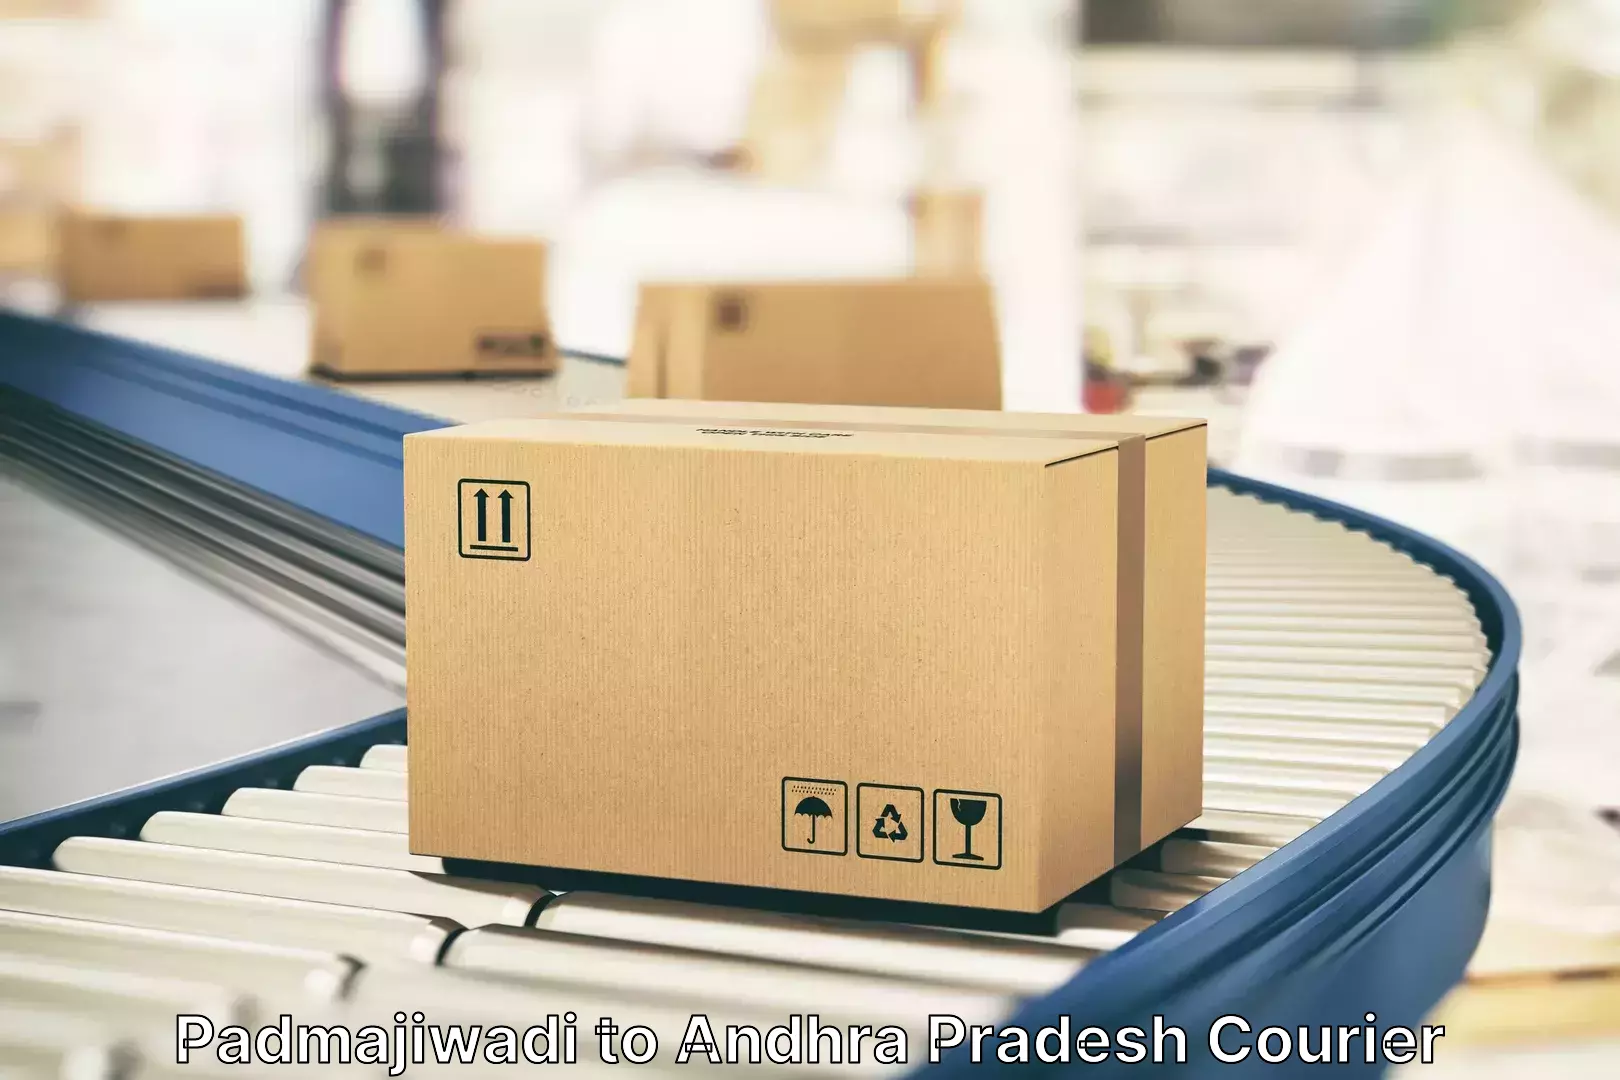 Luggage delivery providers Padmajiwadi to Srikalahasti